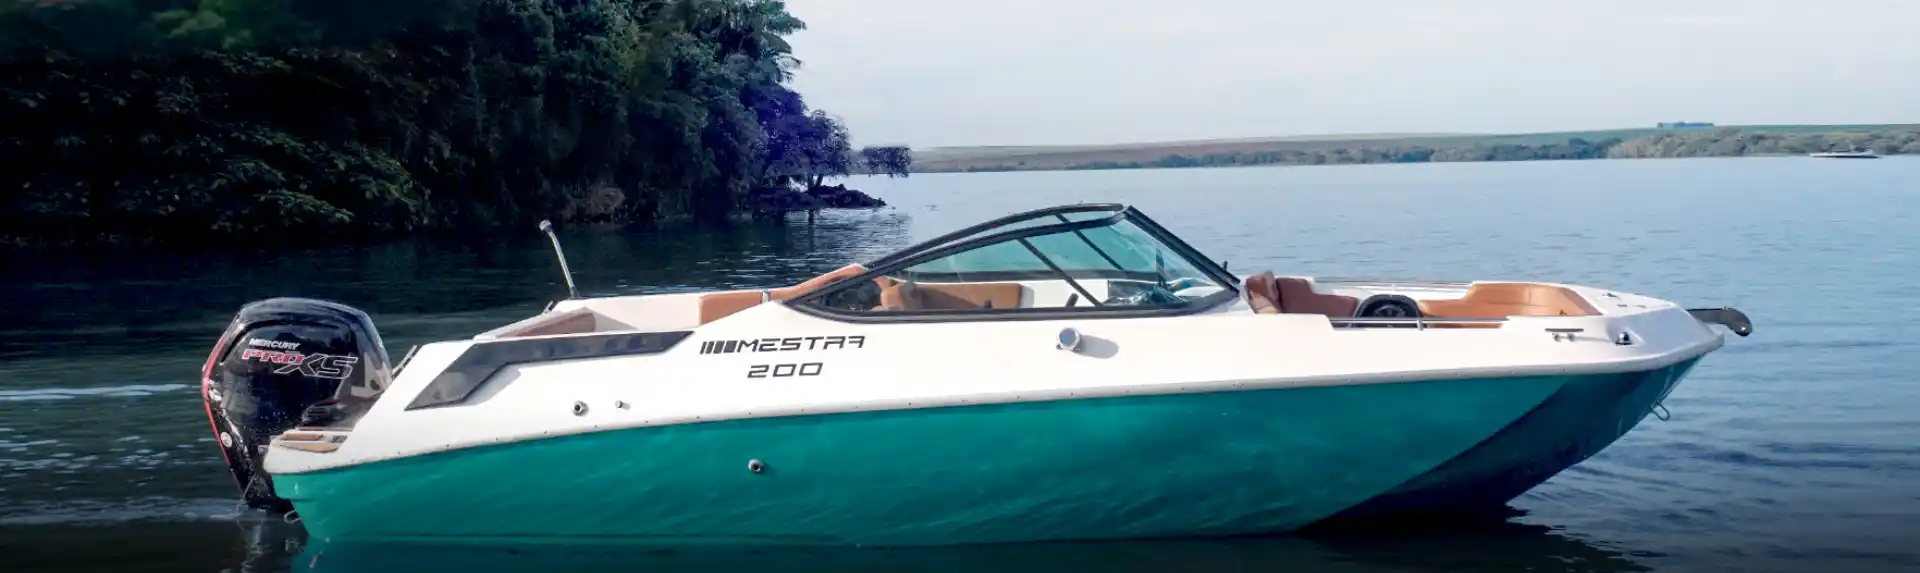 Mestra Boats M200 photo